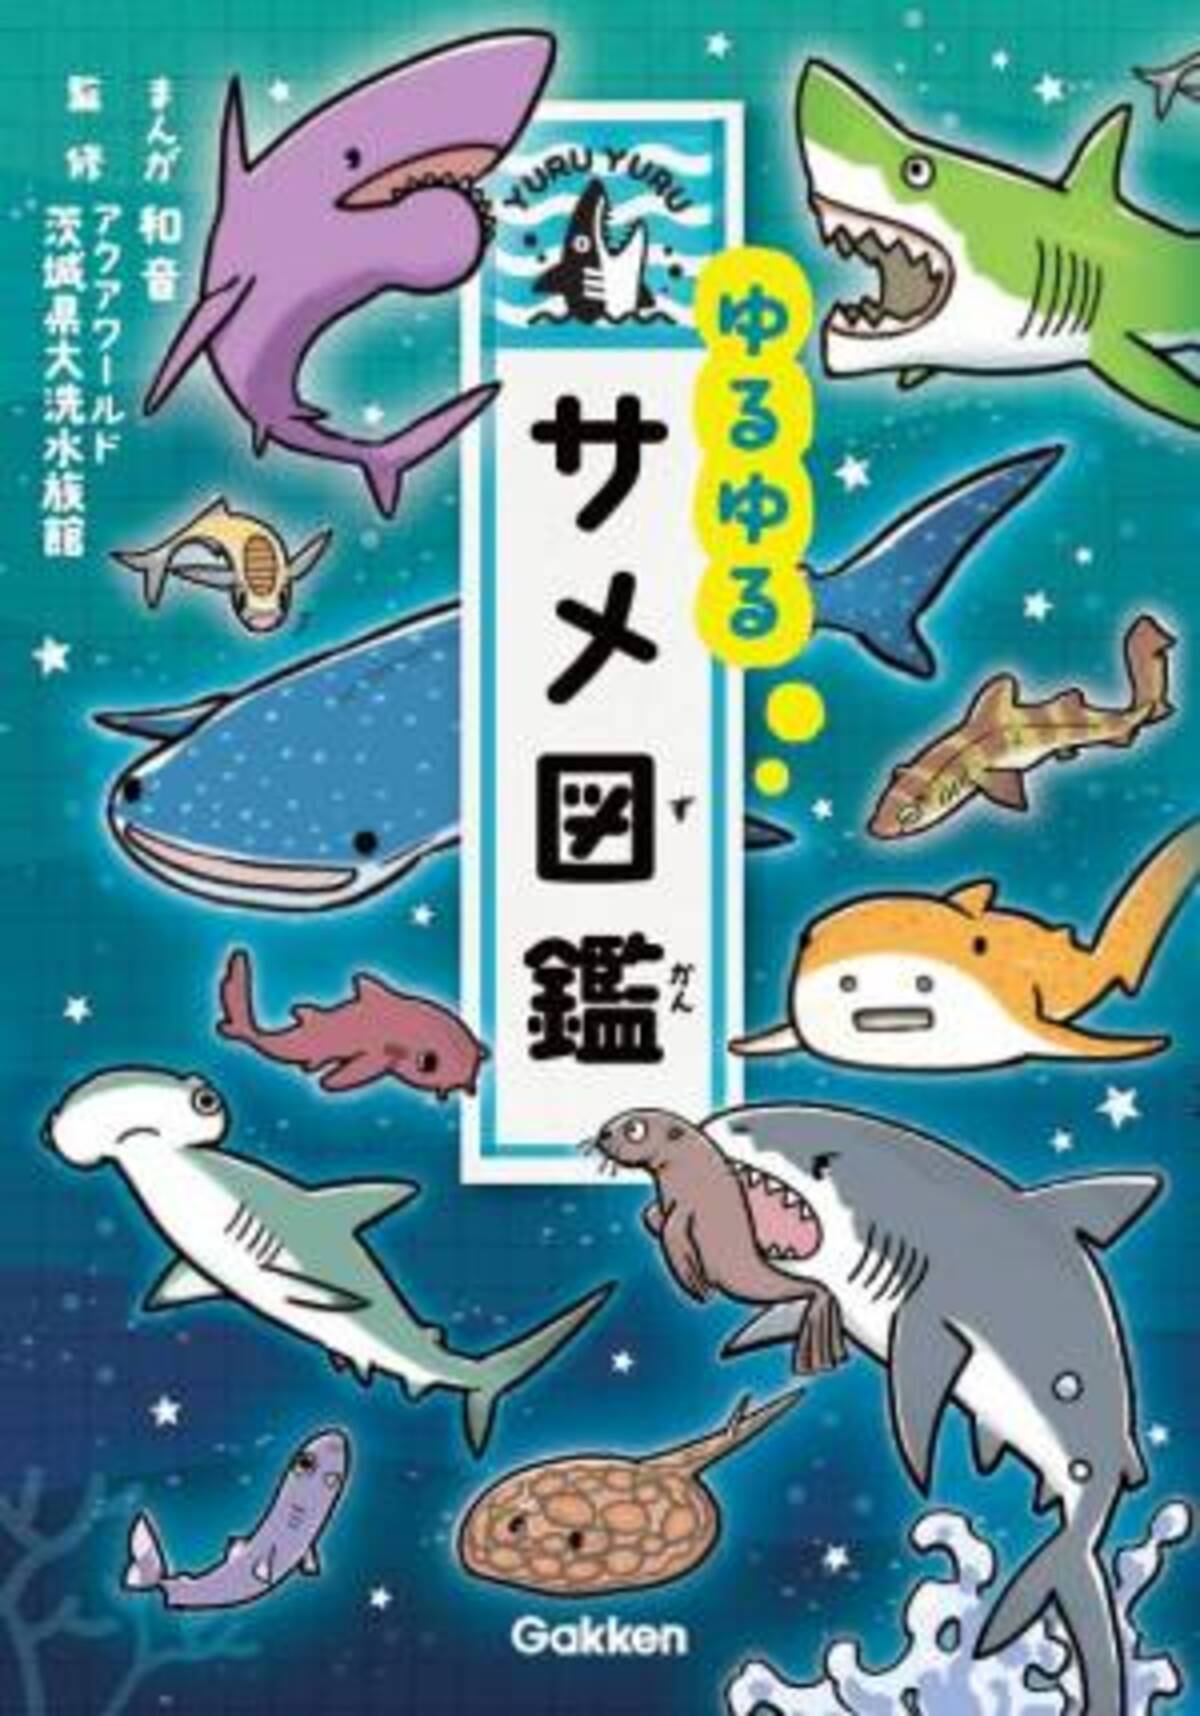 ゆるゆる４コマ図鑑シリーズ最新作 ゆるゆるサメ図鑑 発売 危険生物人気no 1のサメ たちが60種類以上登場 年5月27日 ウーマンエキサイト 1 2